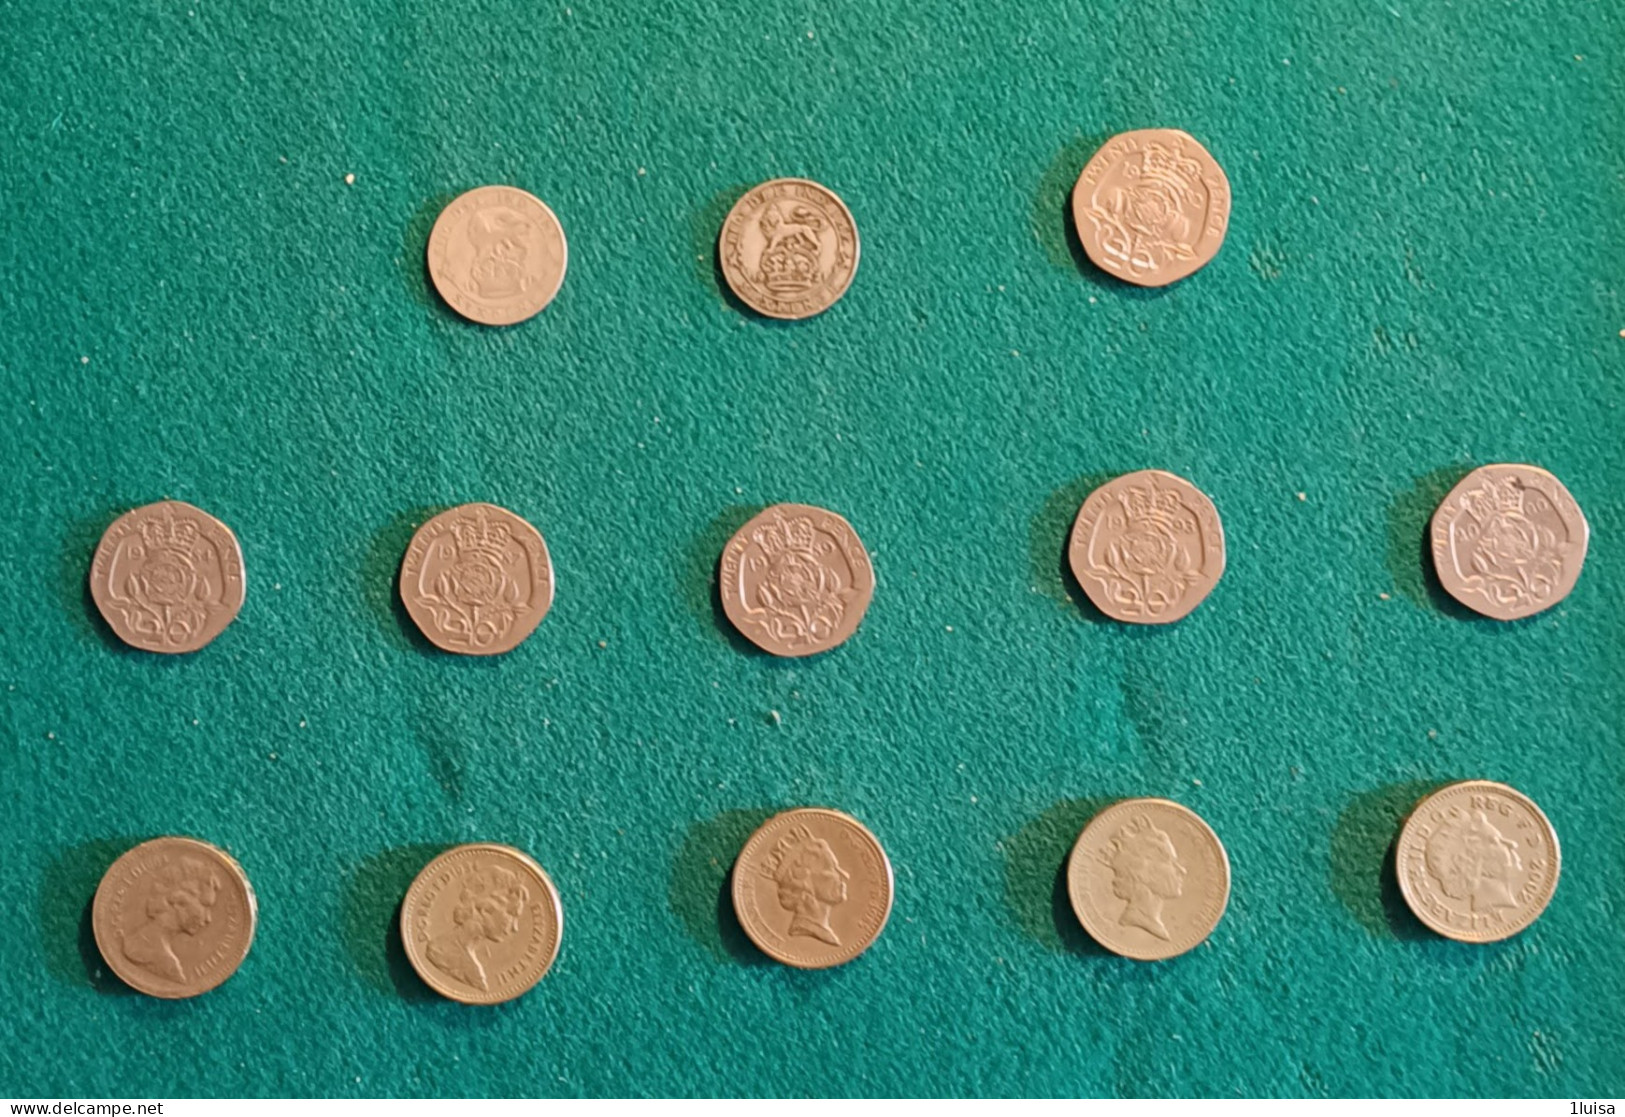 GRAN BRETAGNA 13 Monete Originali Differenti Per Data 1 Sterlina 20 Pence 6 Pence - 1 Pound